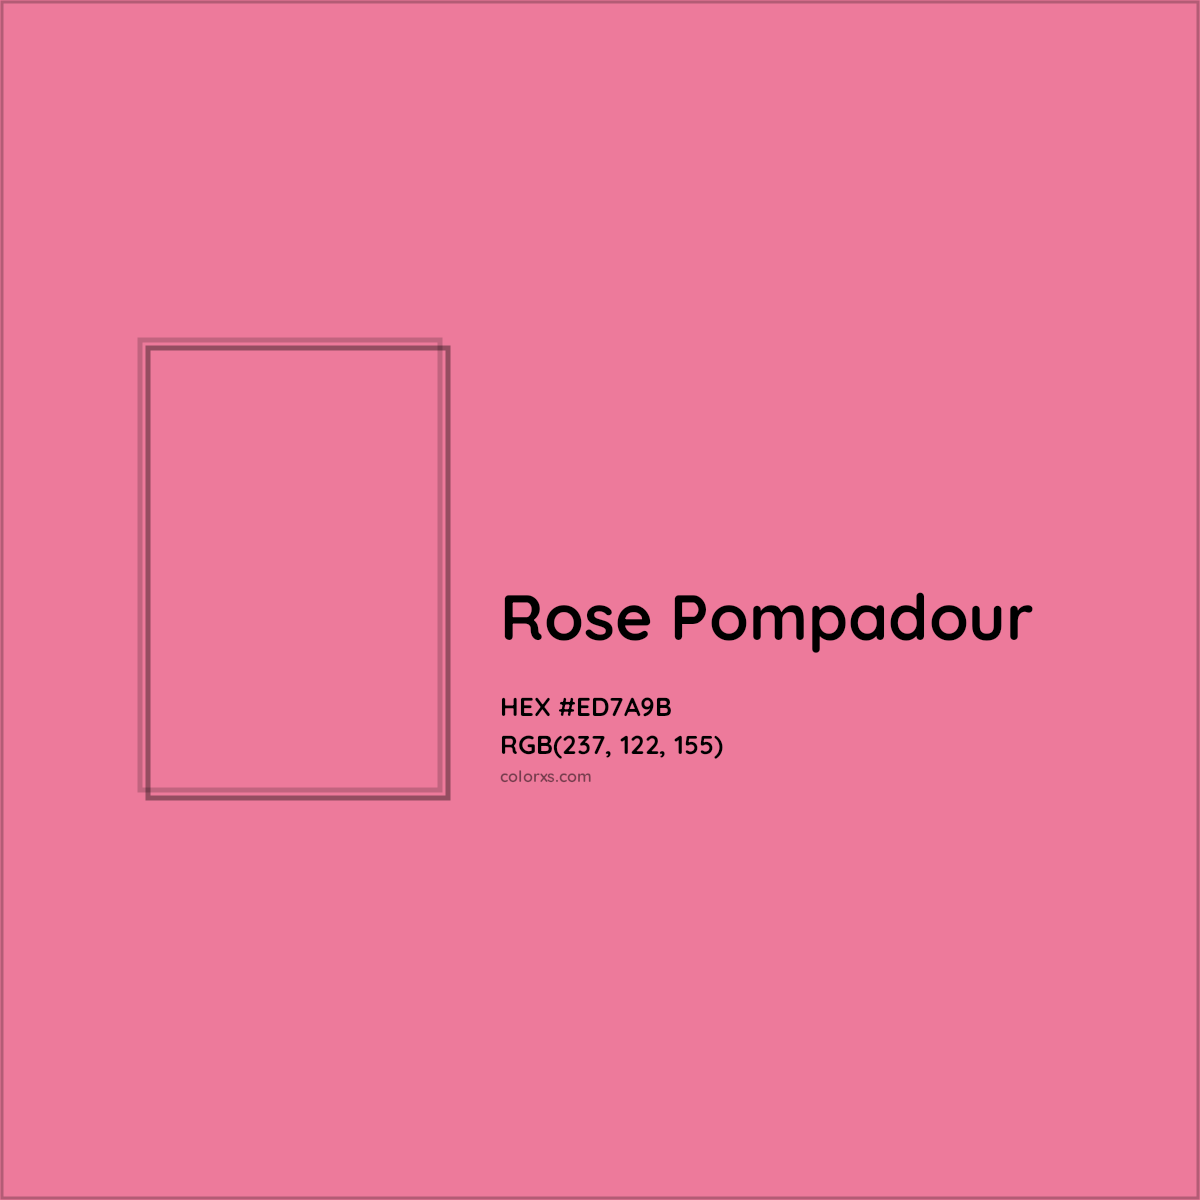 HEX #ED7A9B Rose Pompadour Color - Color Code